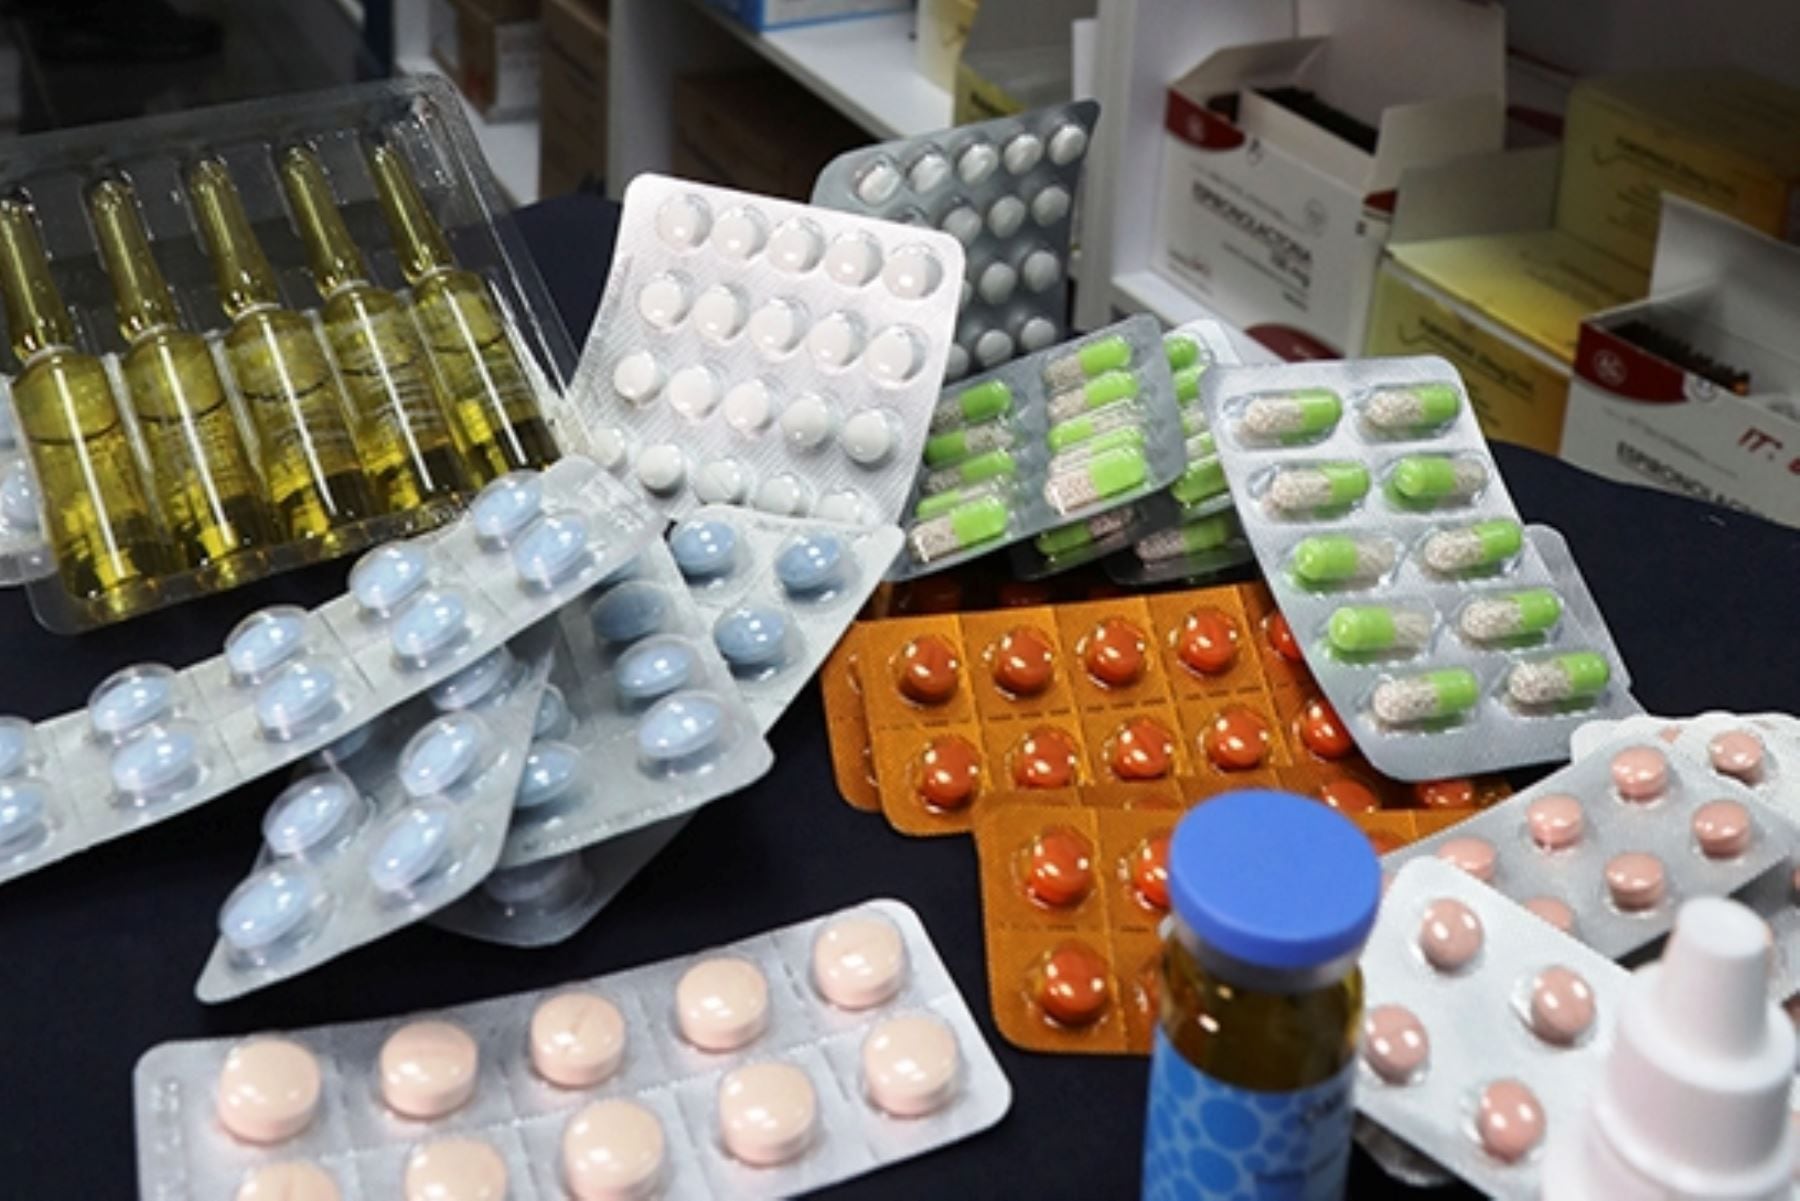 Gremios de farmacias y boticas se muestra en contra de listado de genéricos, pues señalan que es desproporcionado y no garantiza la calidad de medicamentos.